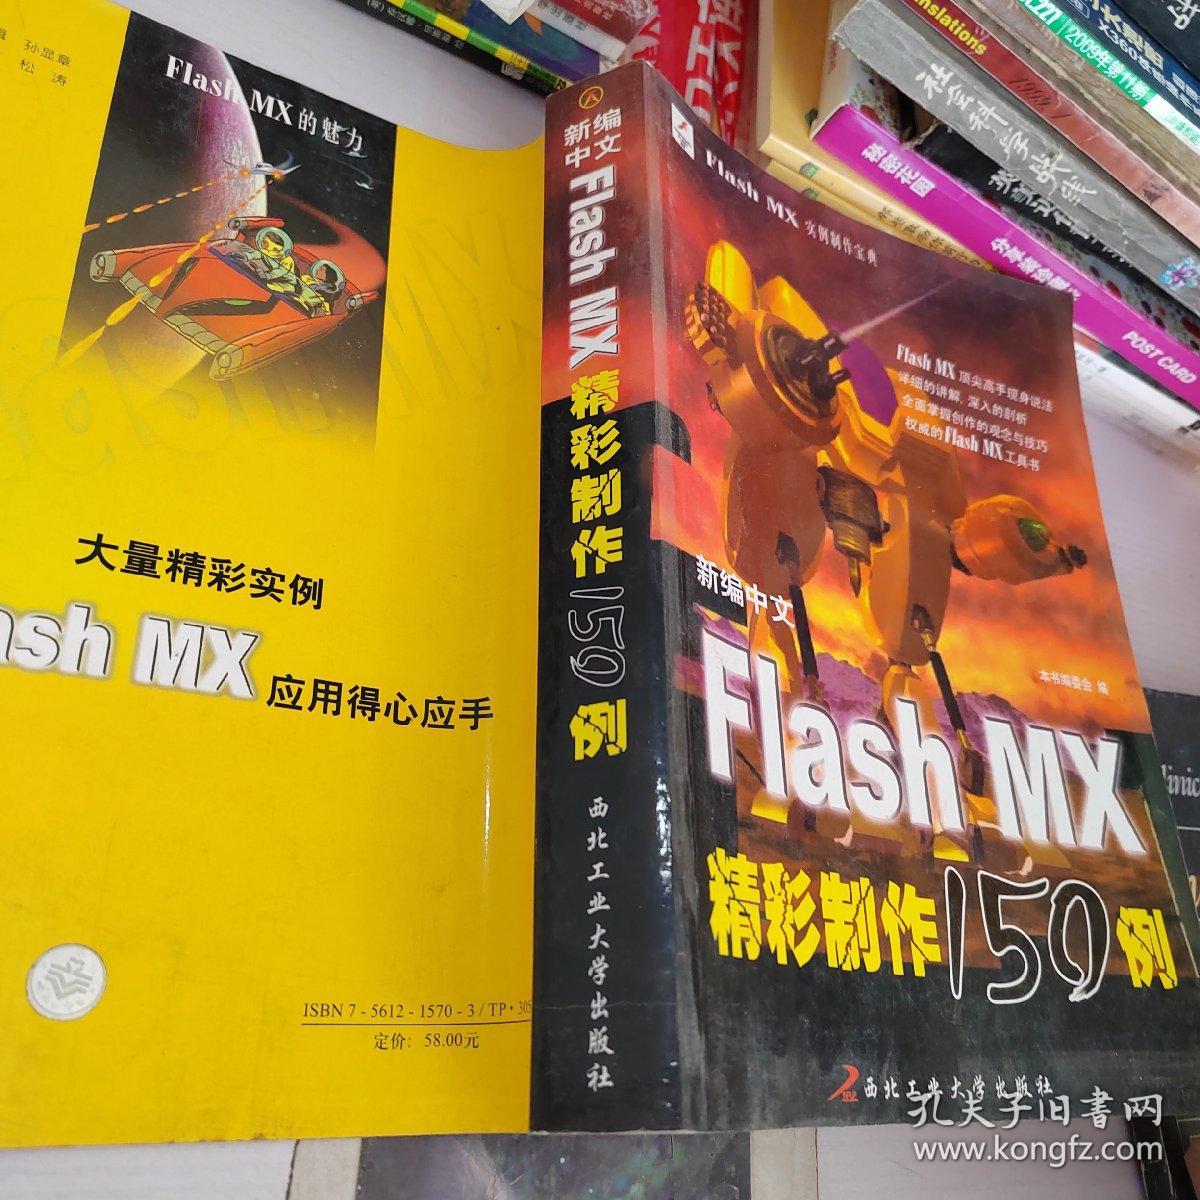 新编中文Flash MX精彩制作150例——Flash MX 实例制作宝典